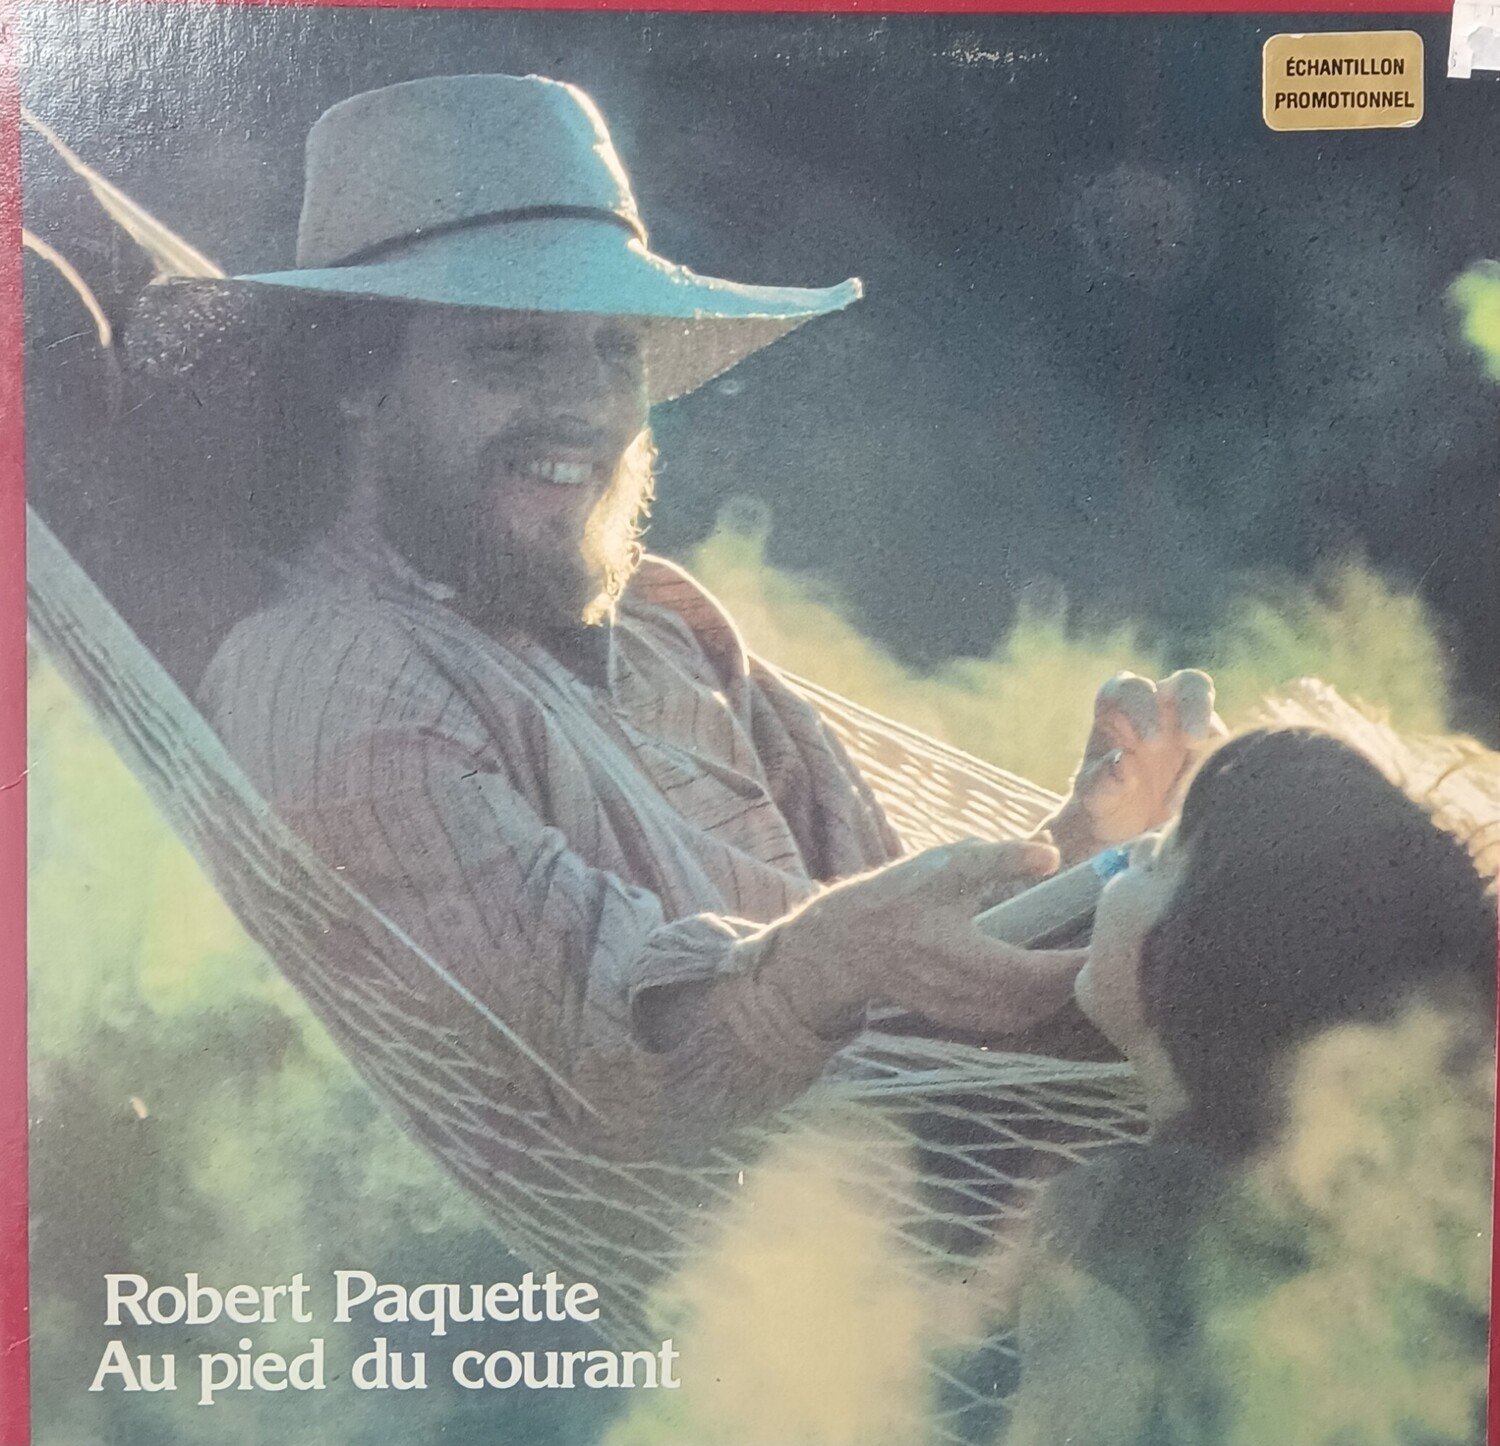 Robert Paquette - Au pied du courant